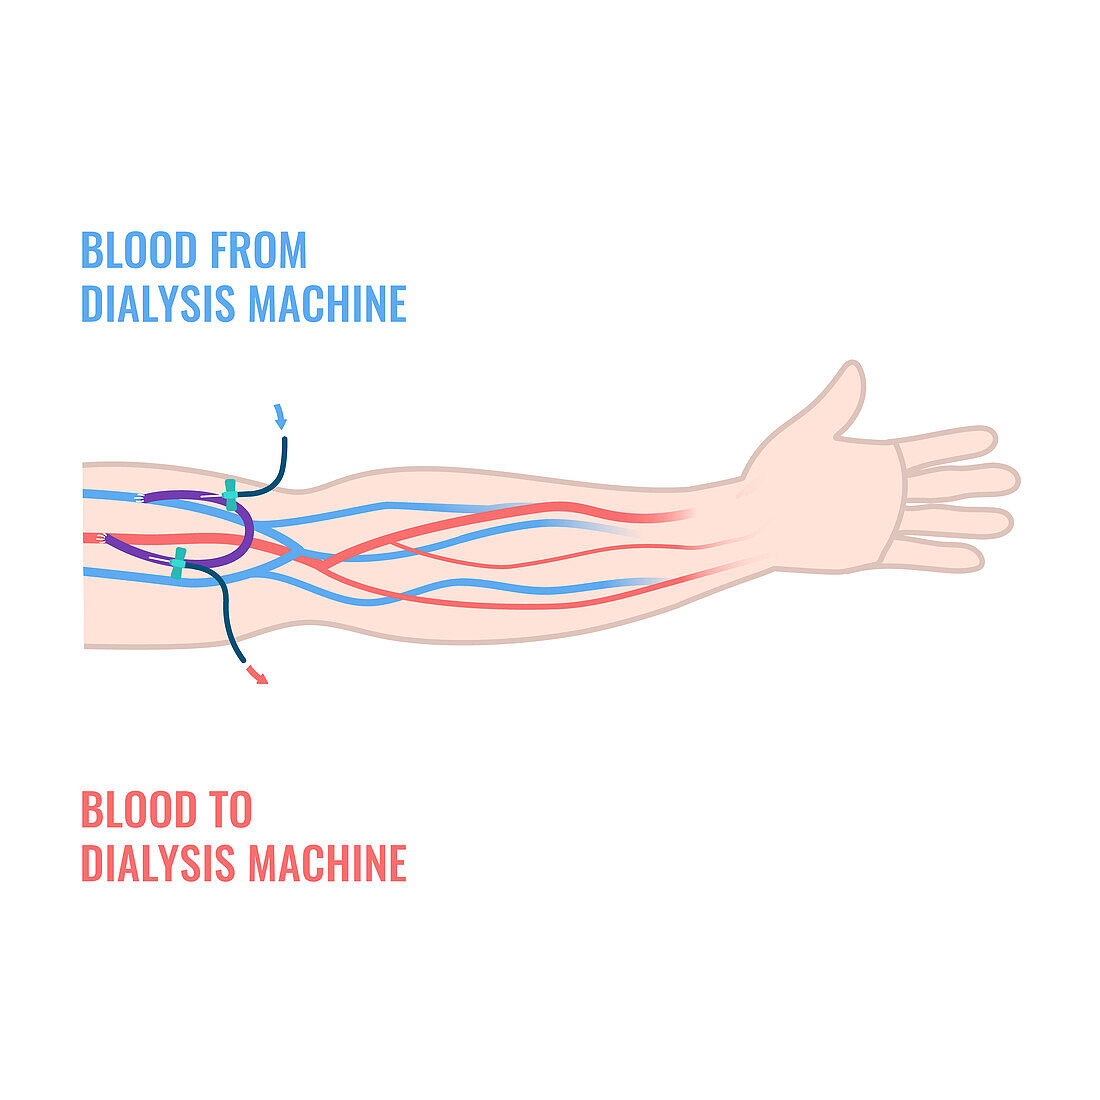 Dialysis shunt graft catheter, illustration